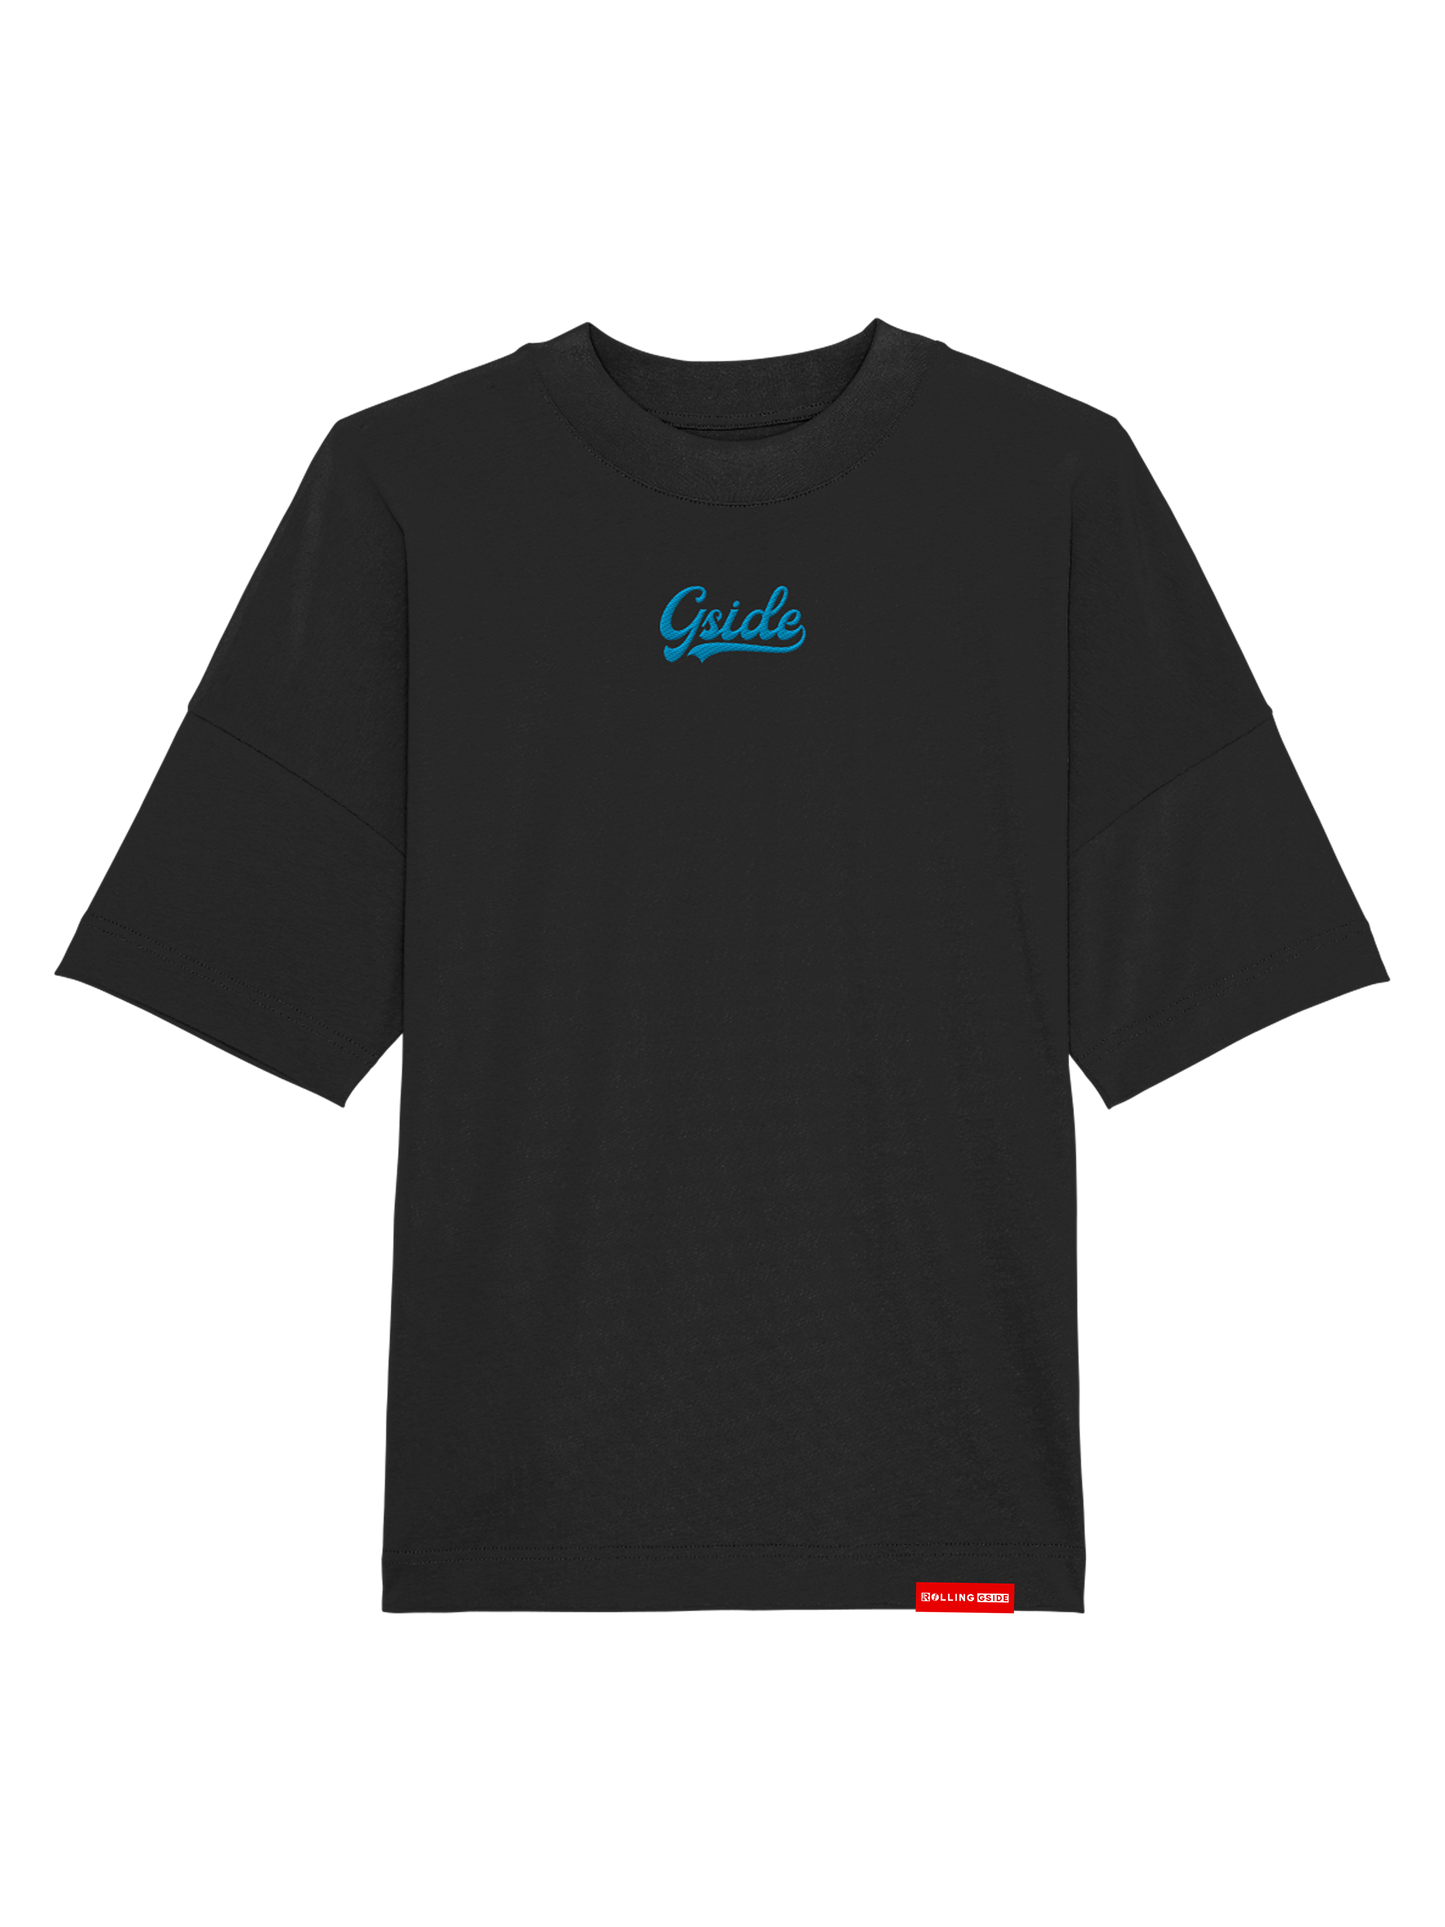 Gside Embroidered Oversize T-Shirt - Black/Blue